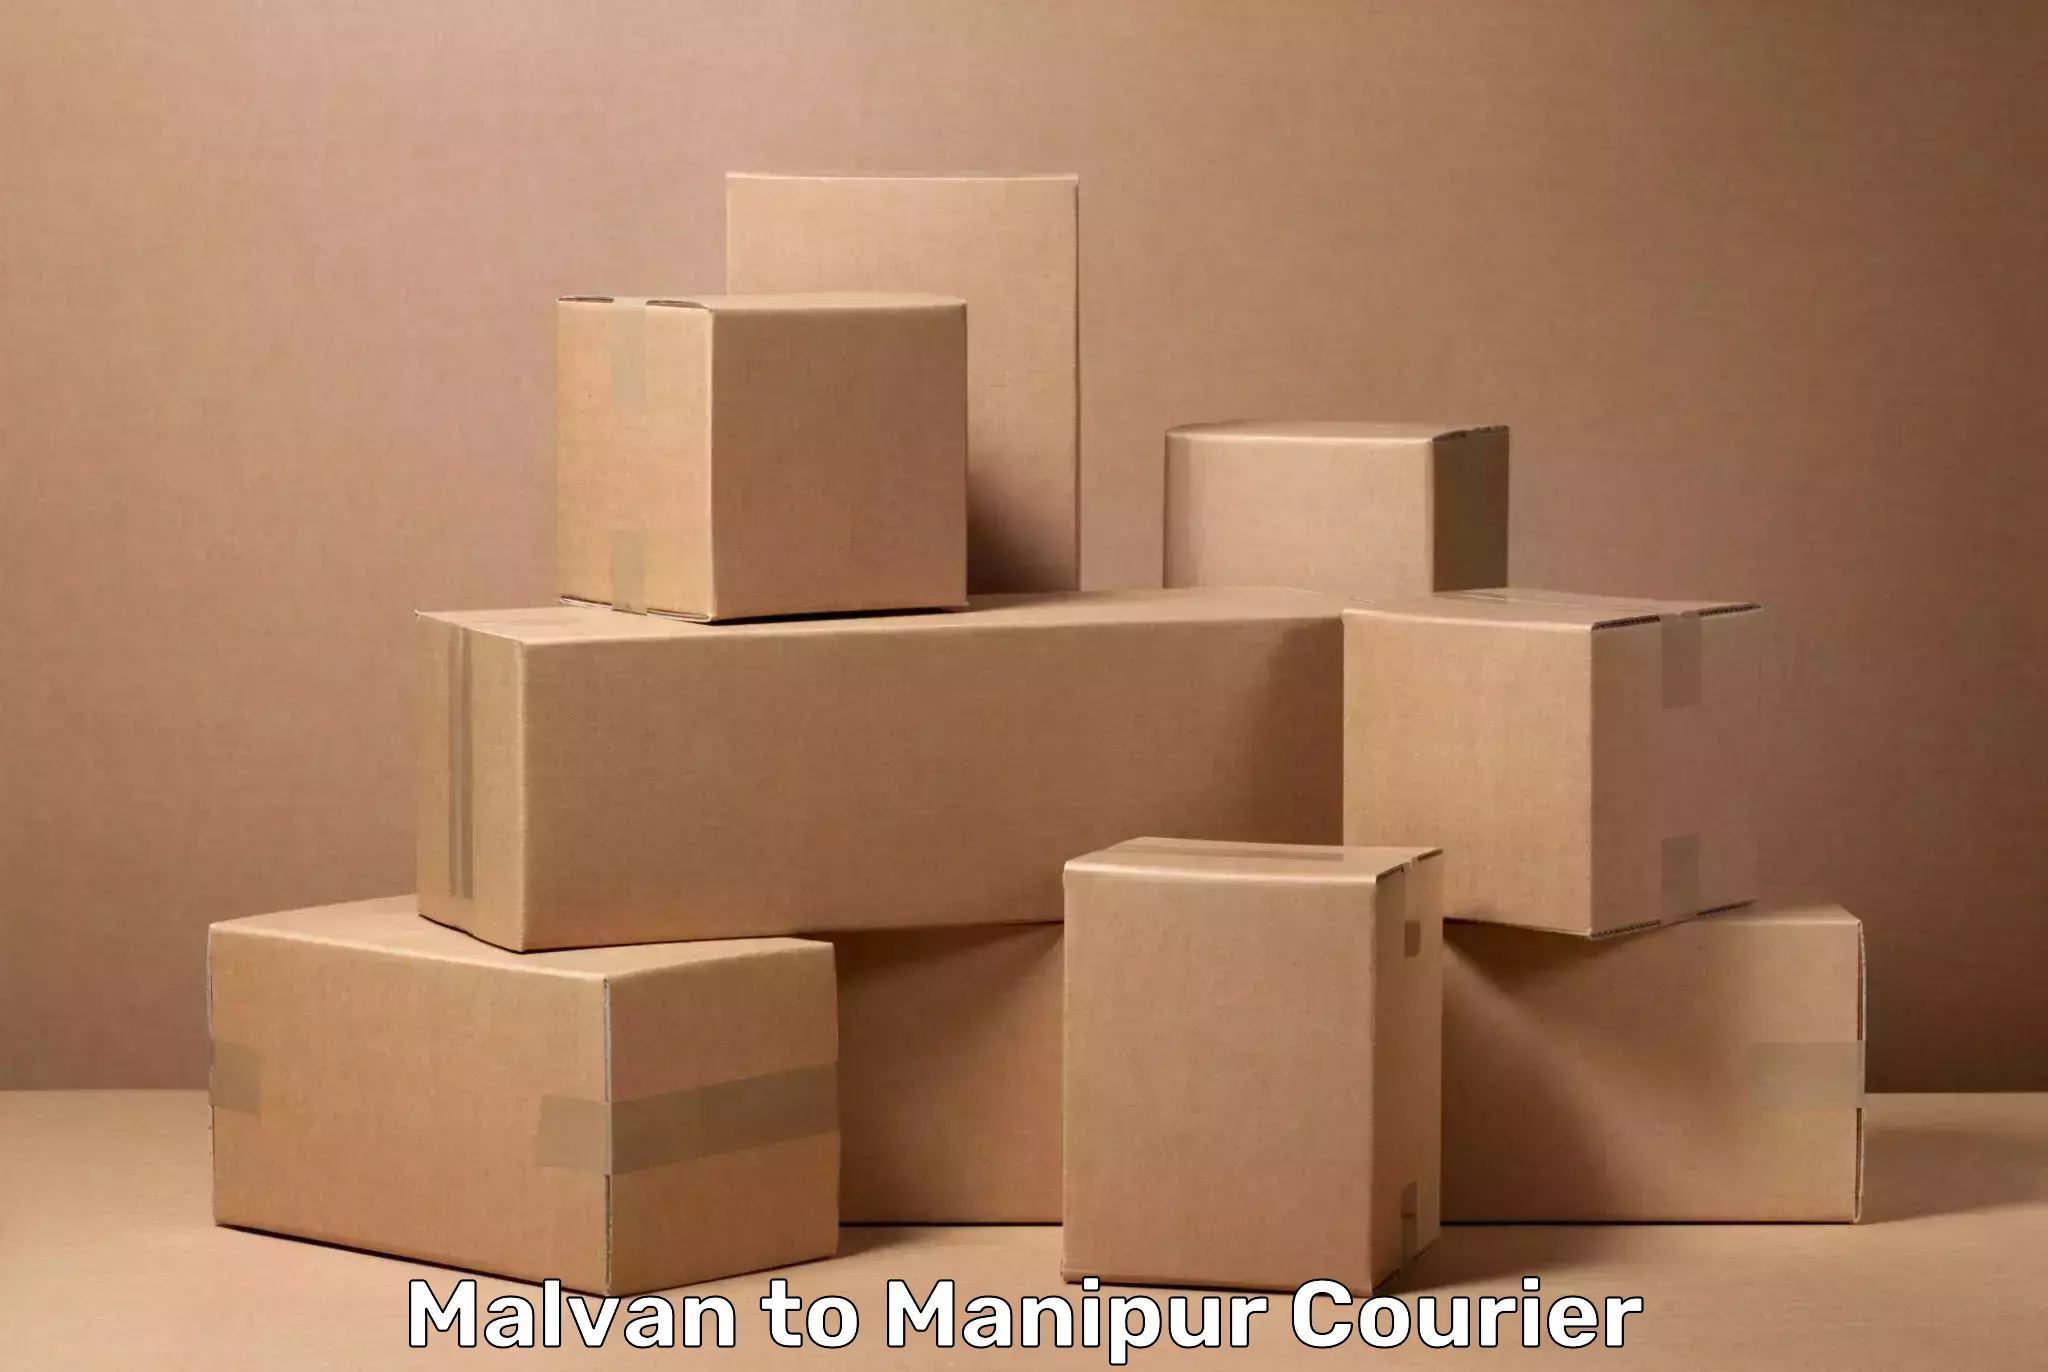 Luggage transit service Malvan to Manipur